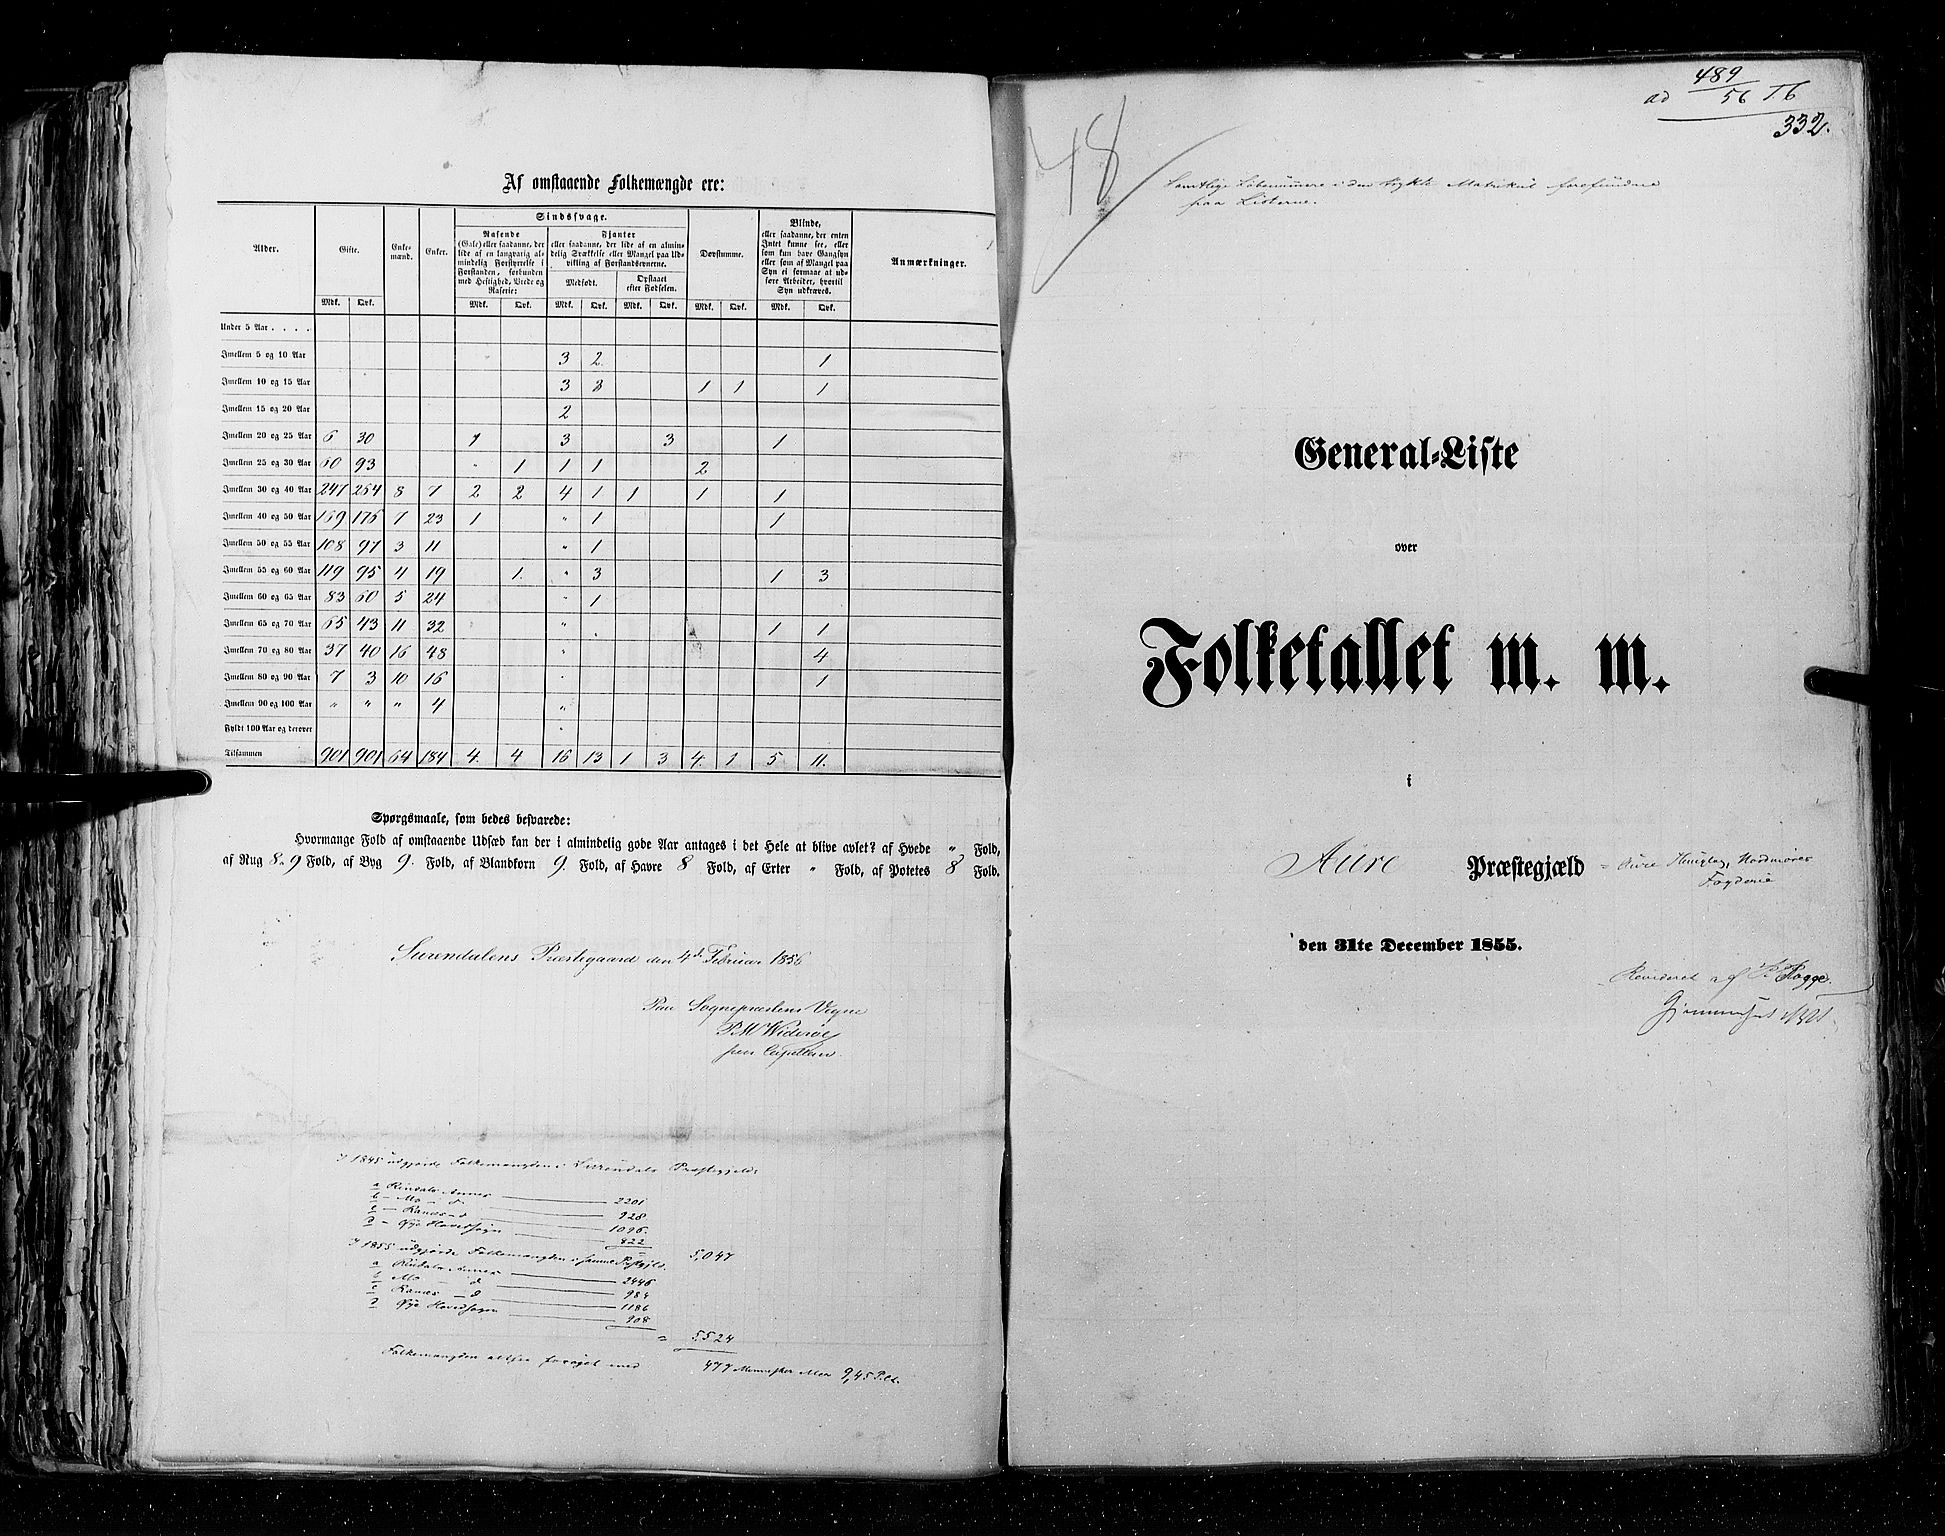 RA, Folketellingen 1855, bind 5: Nordre Bergenhus amt, Romsdal amt og Søndre Trondhjem amt, 1855, s. 332